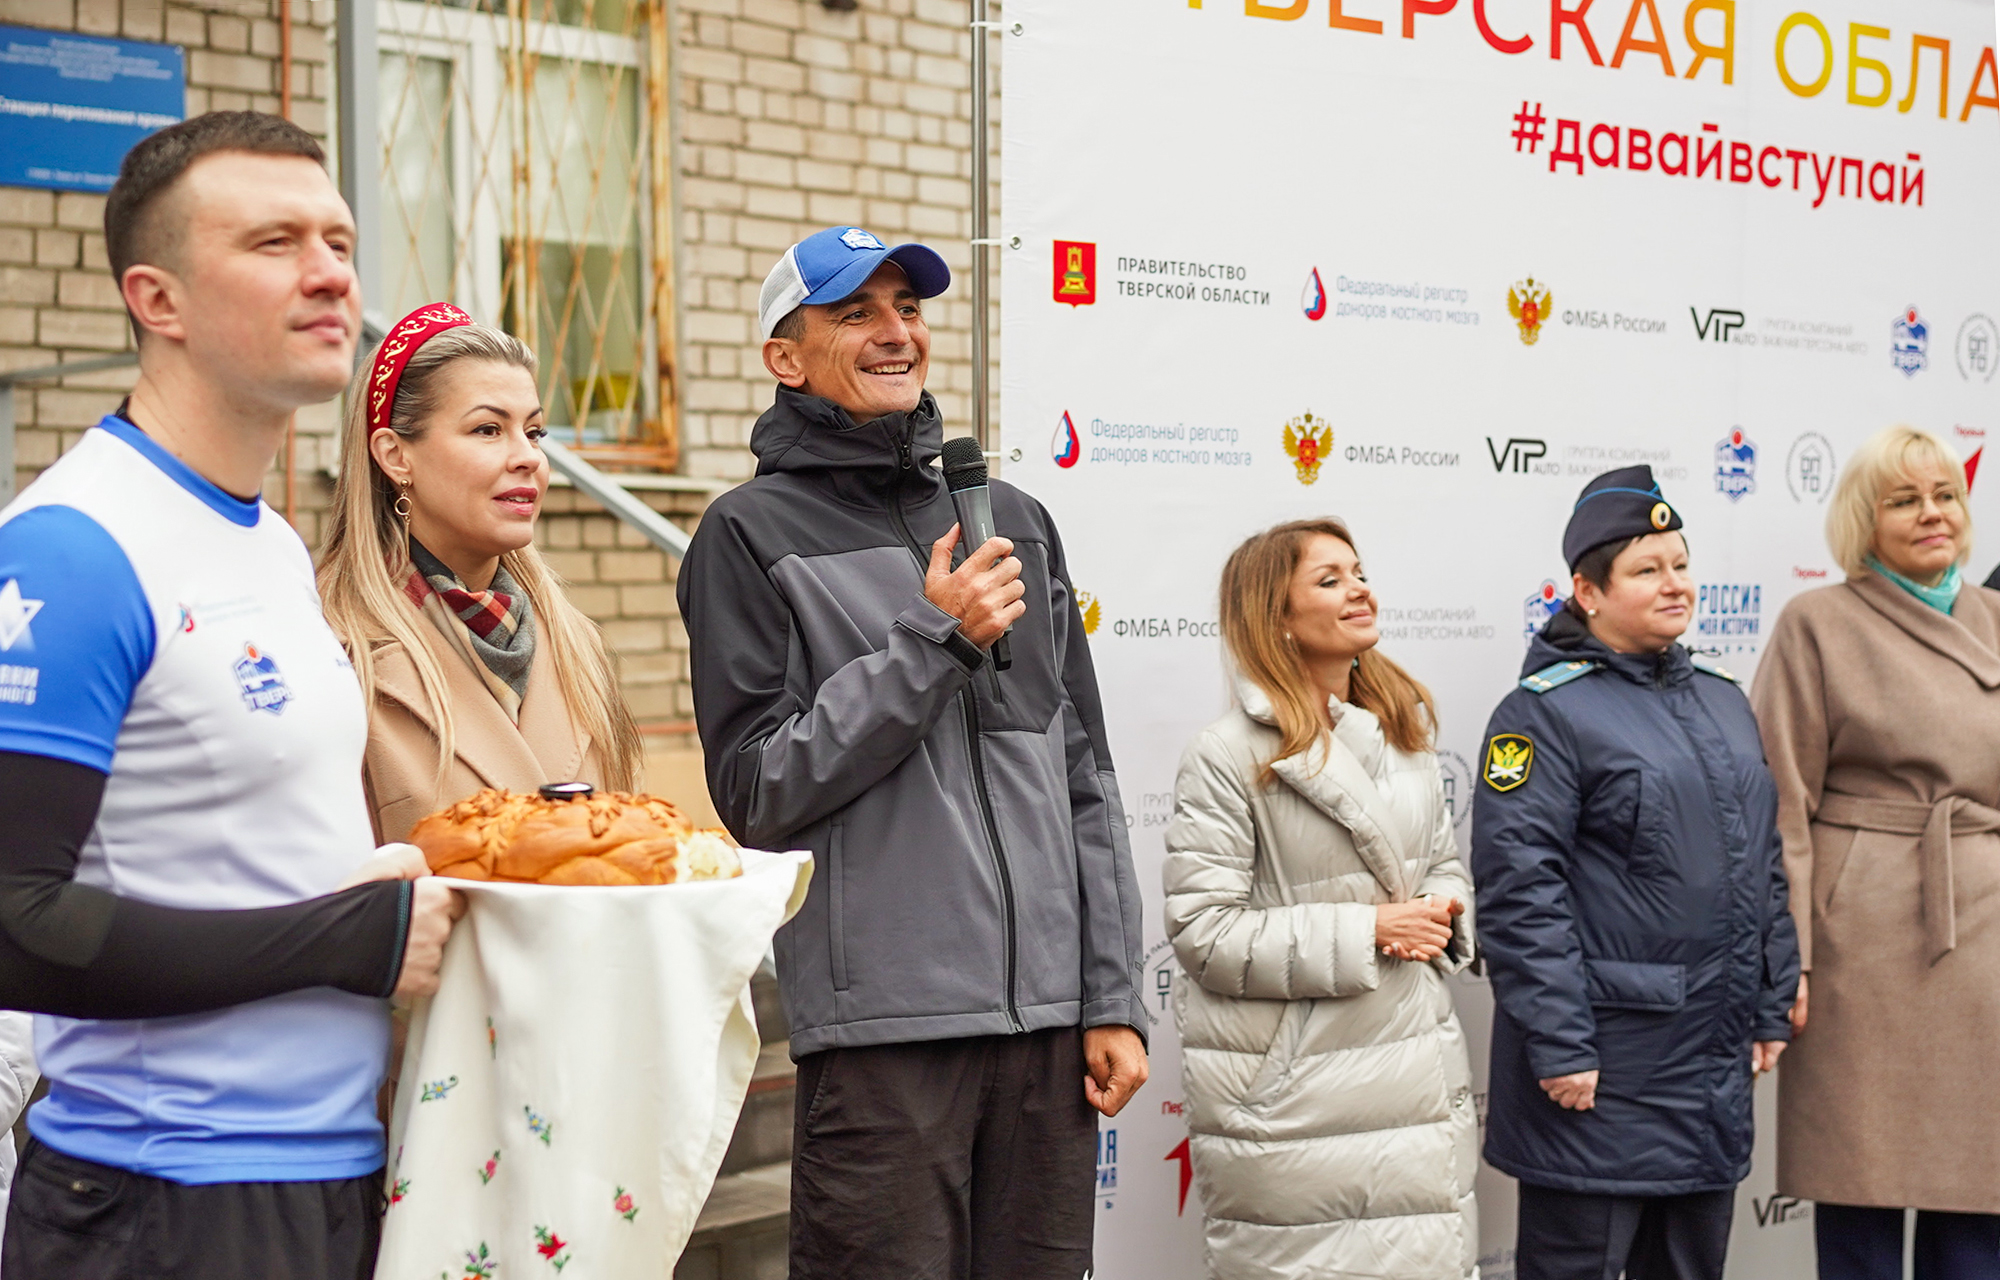 Тверская область стала площадкой для Всероссийского марафон по развитию донорства костного мозга